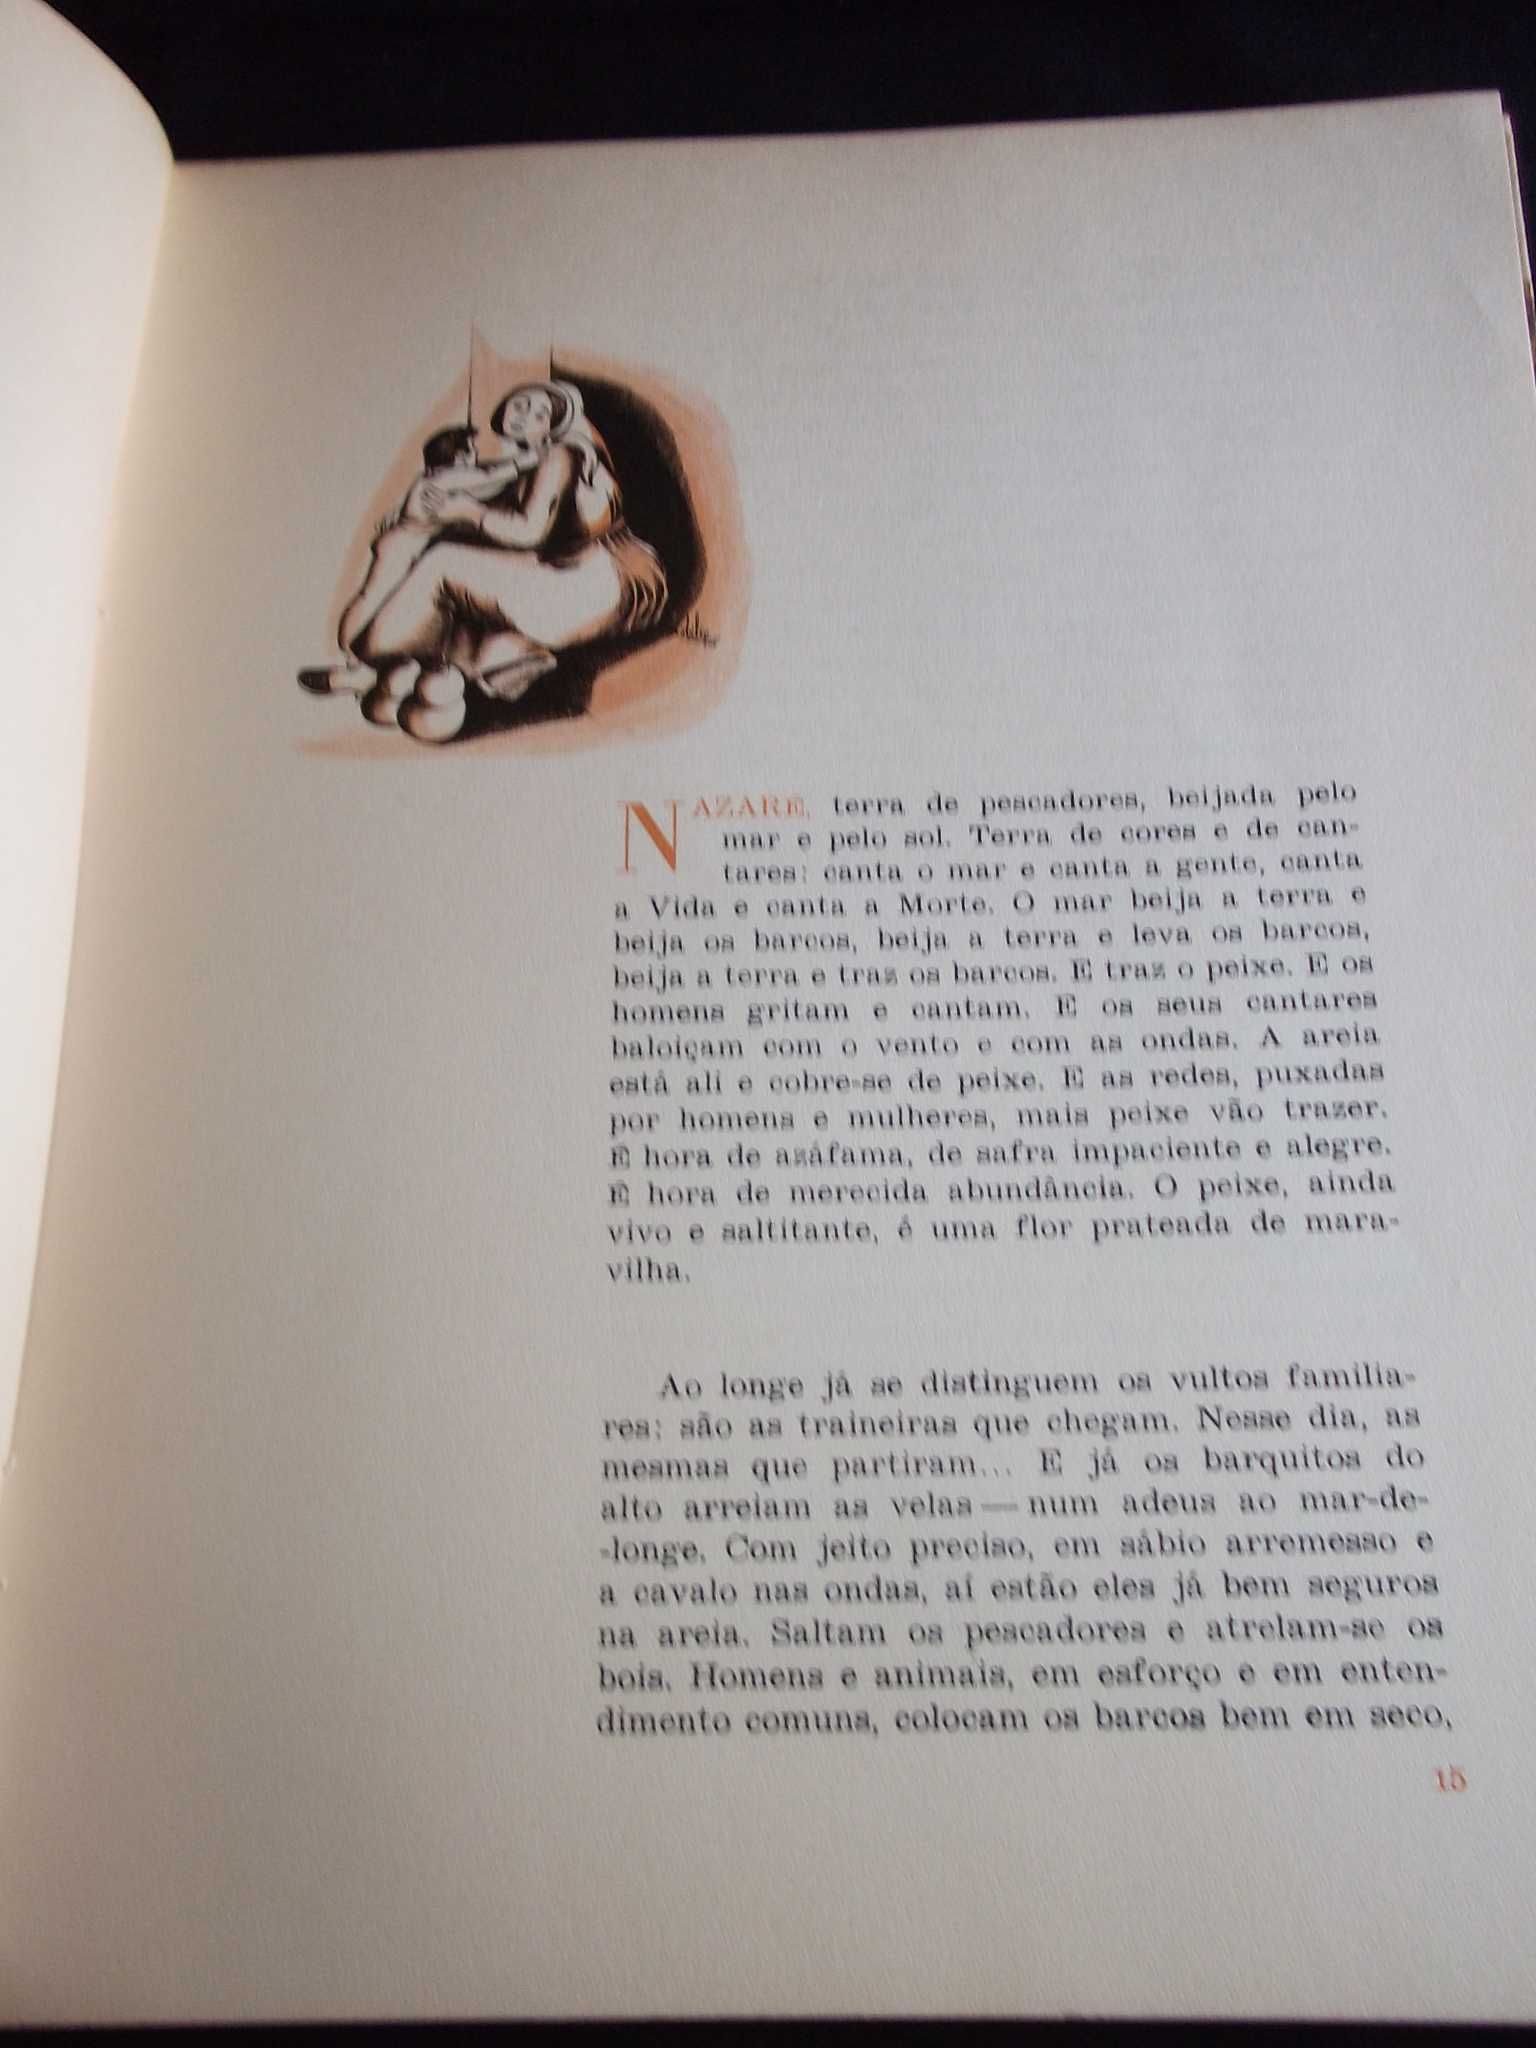 Livro O Trajo da Nazaré Abílio Silva Astória 1970